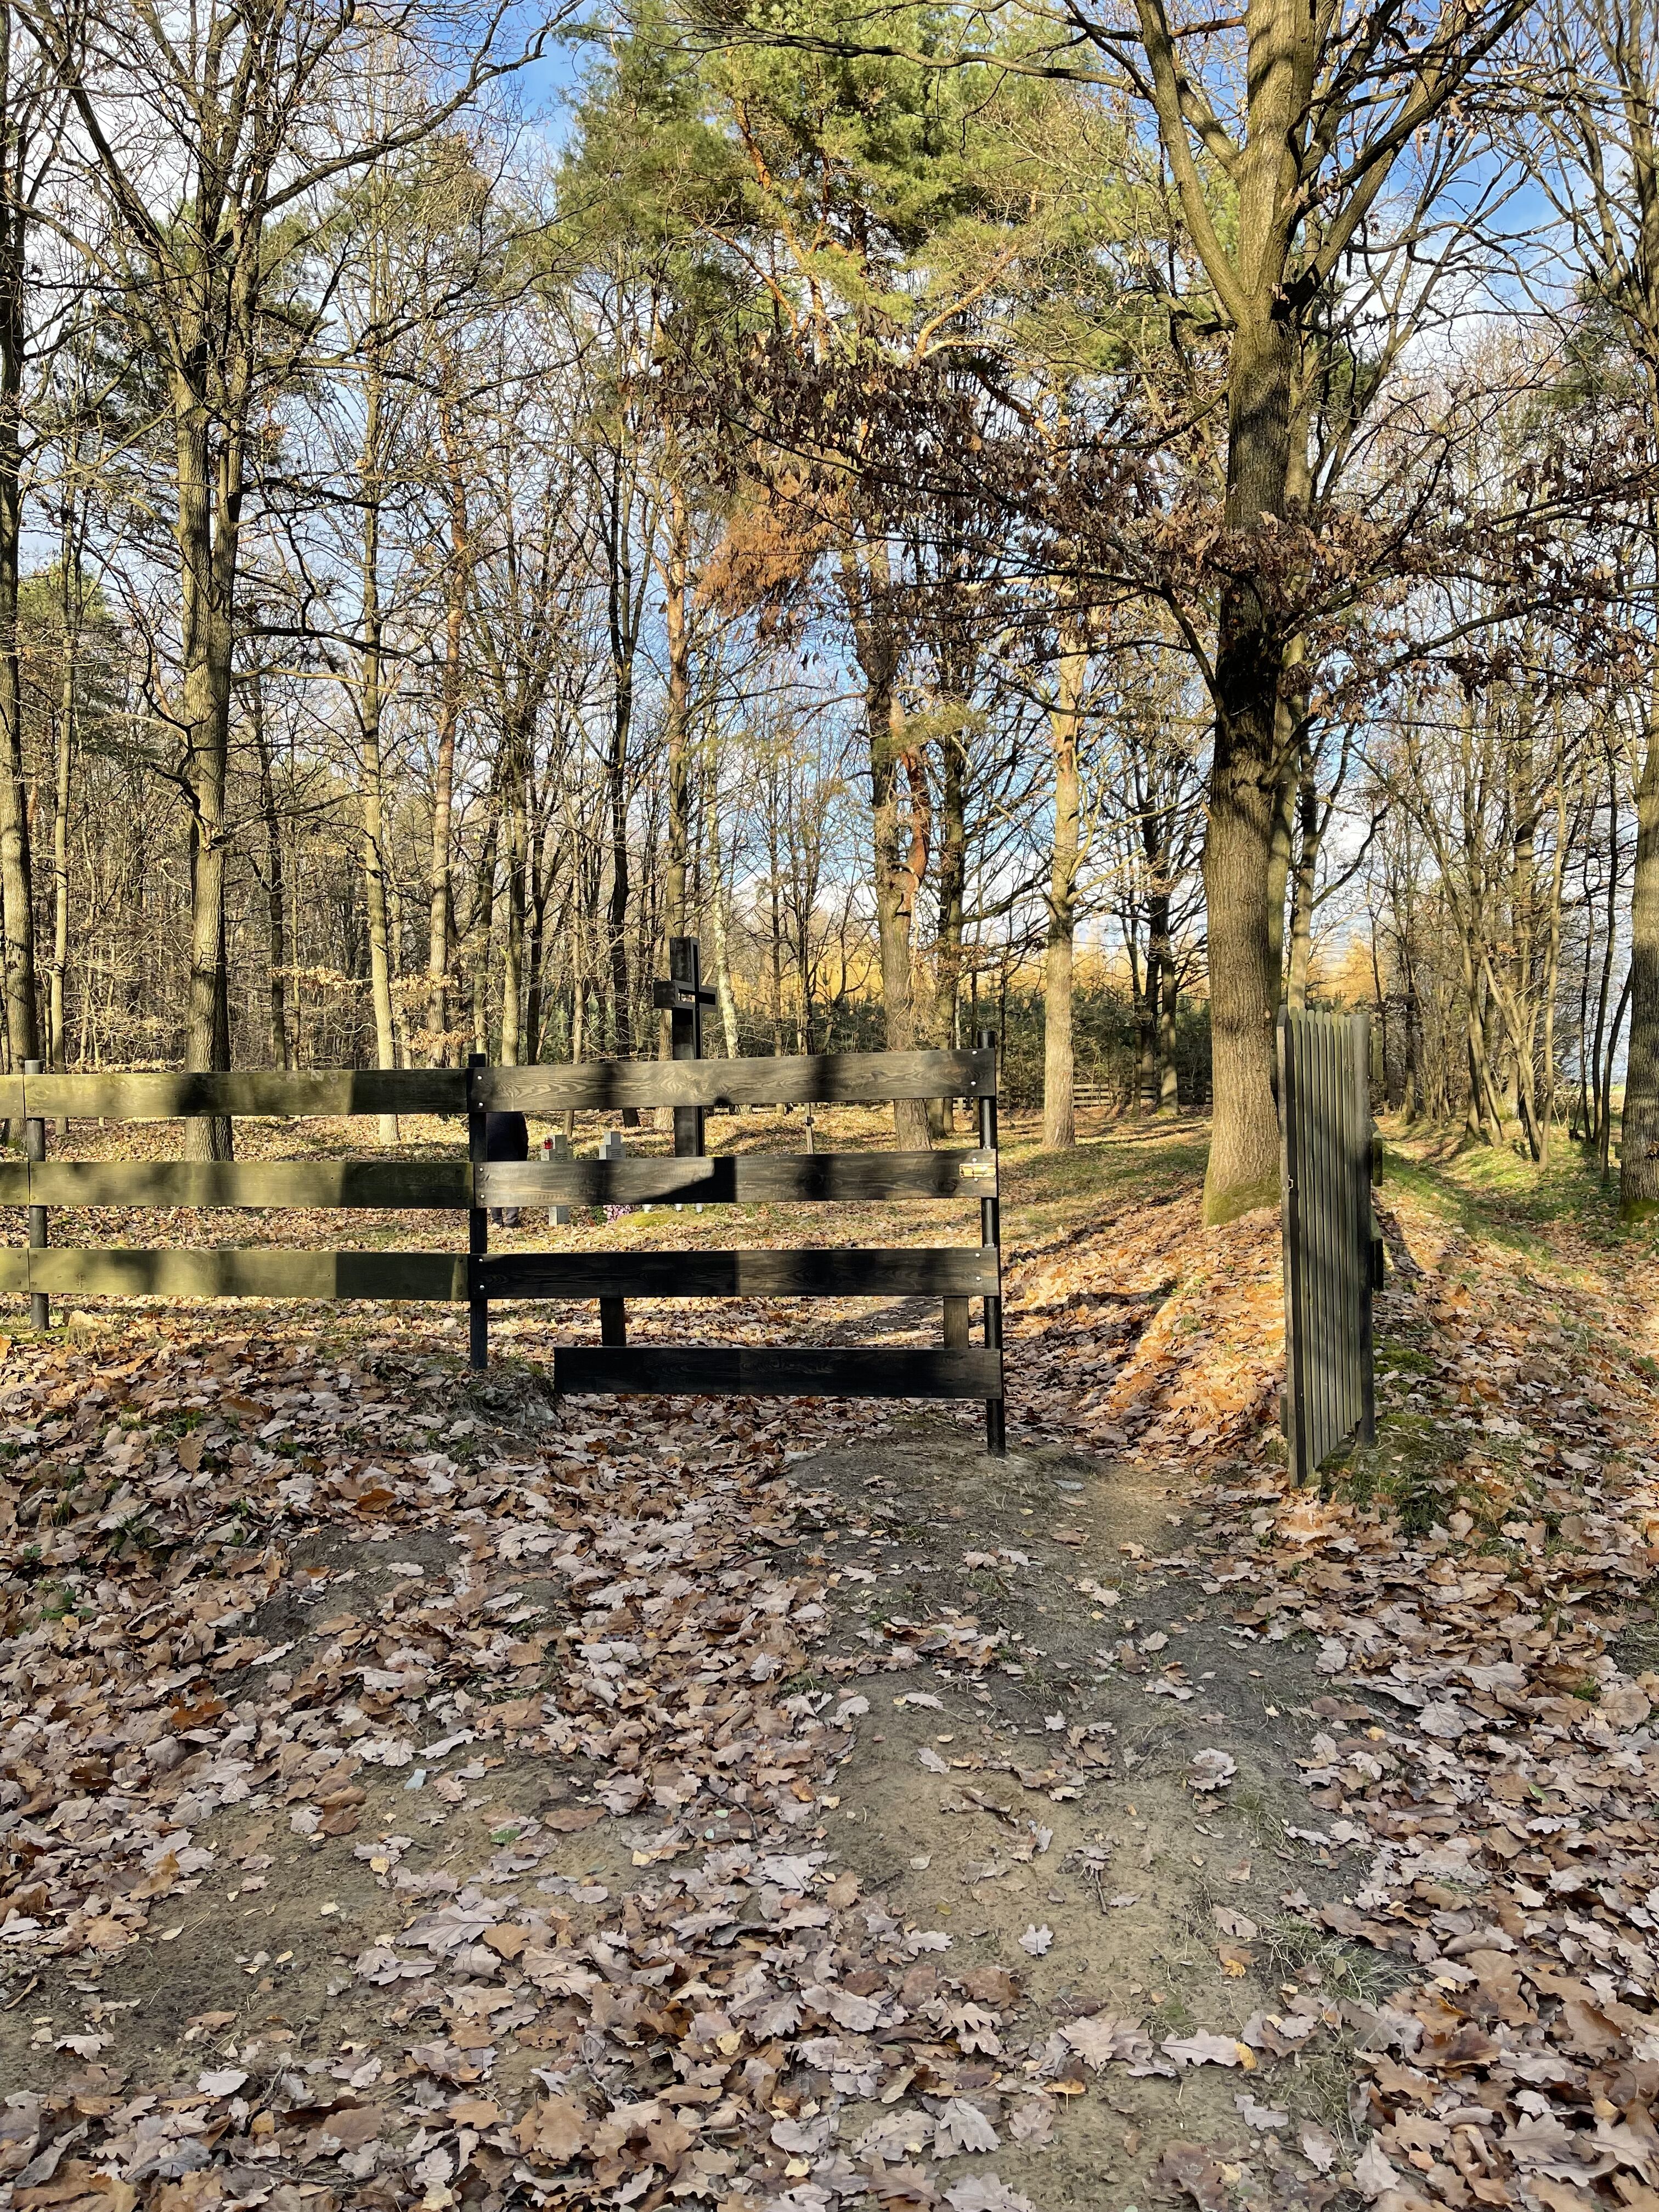 Zdjęcie przedstawia wejście, furtkę na cmentarz z okresu I Wojny Światowej w Wierzchowiskach. Przęsła ogrodzenia wykonane z drewna, w tle widnieją drzewa.